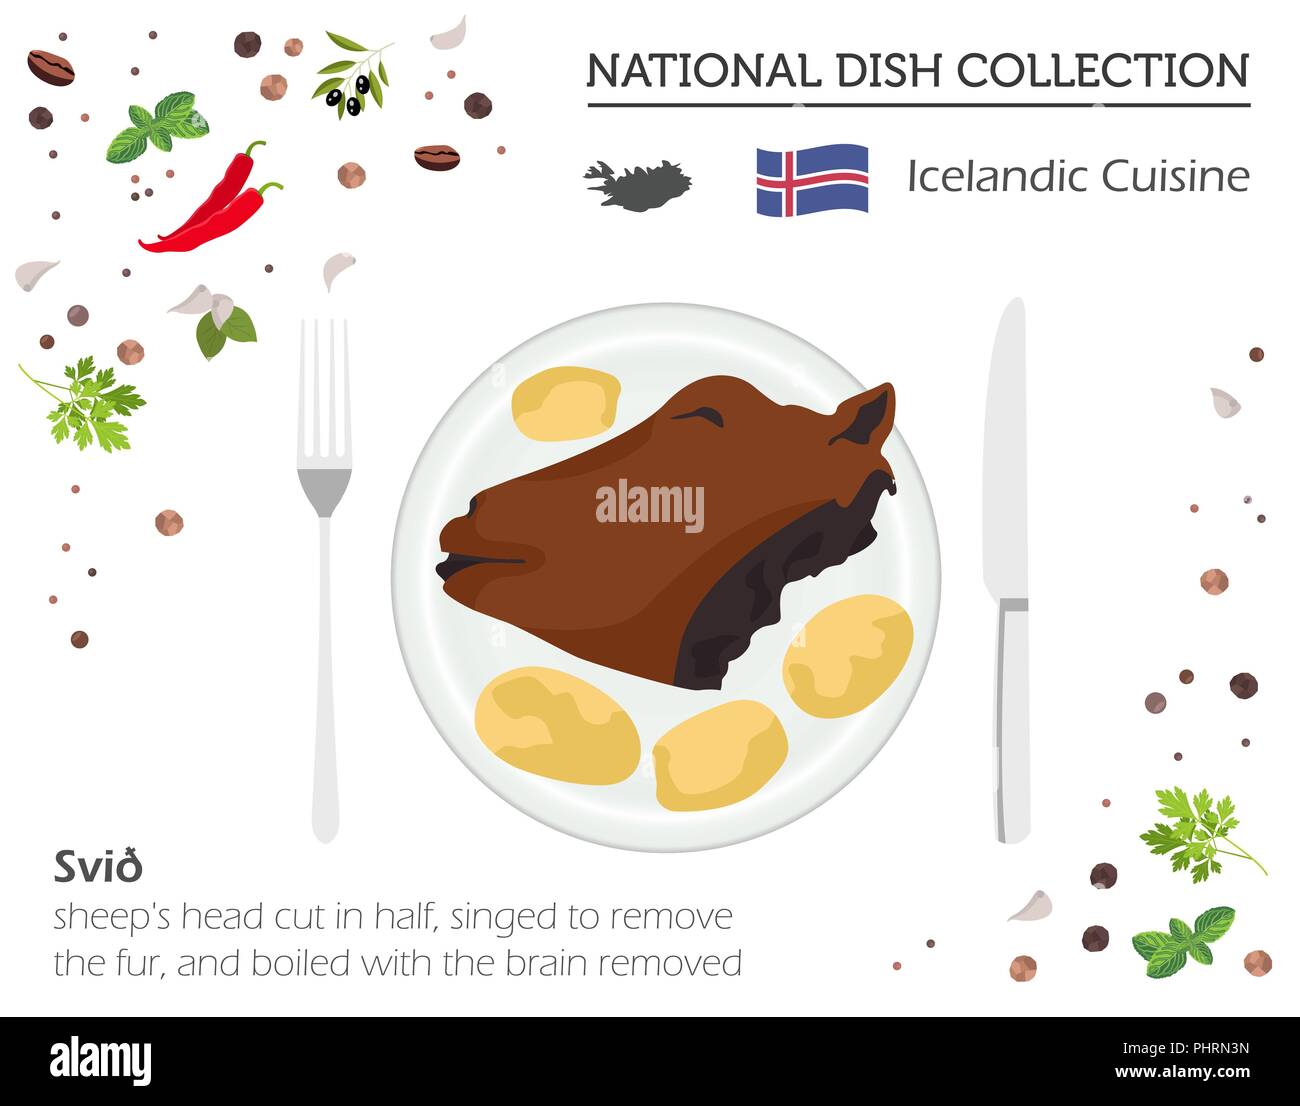 Cucina islandese. Europeo piatto nazionale di raccolta. La testa di pecora tagliata a metà isolato su bianco, una infografica. Illustrazione Vettoriale Illustrazione Vettoriale